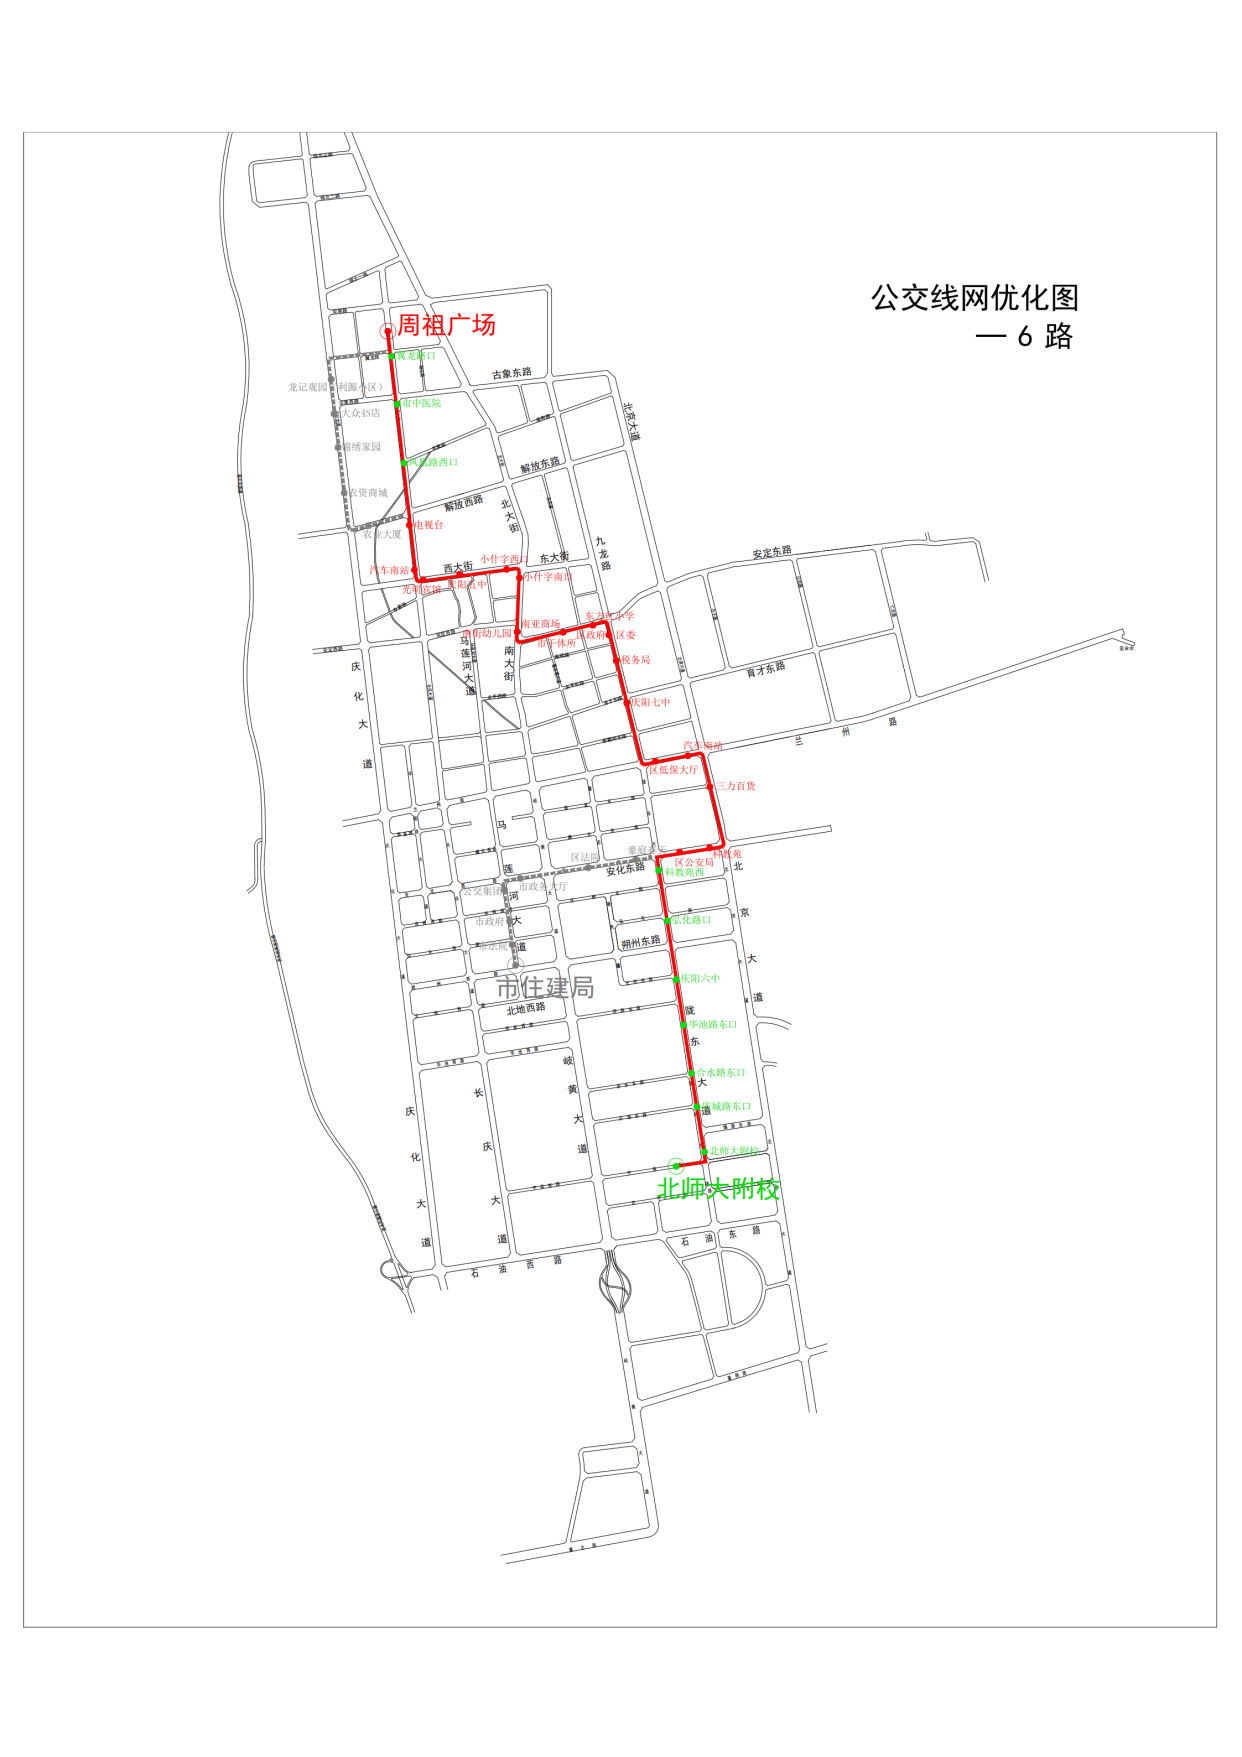 西峰城区4条公交线路可到达高铁站(附线路图)